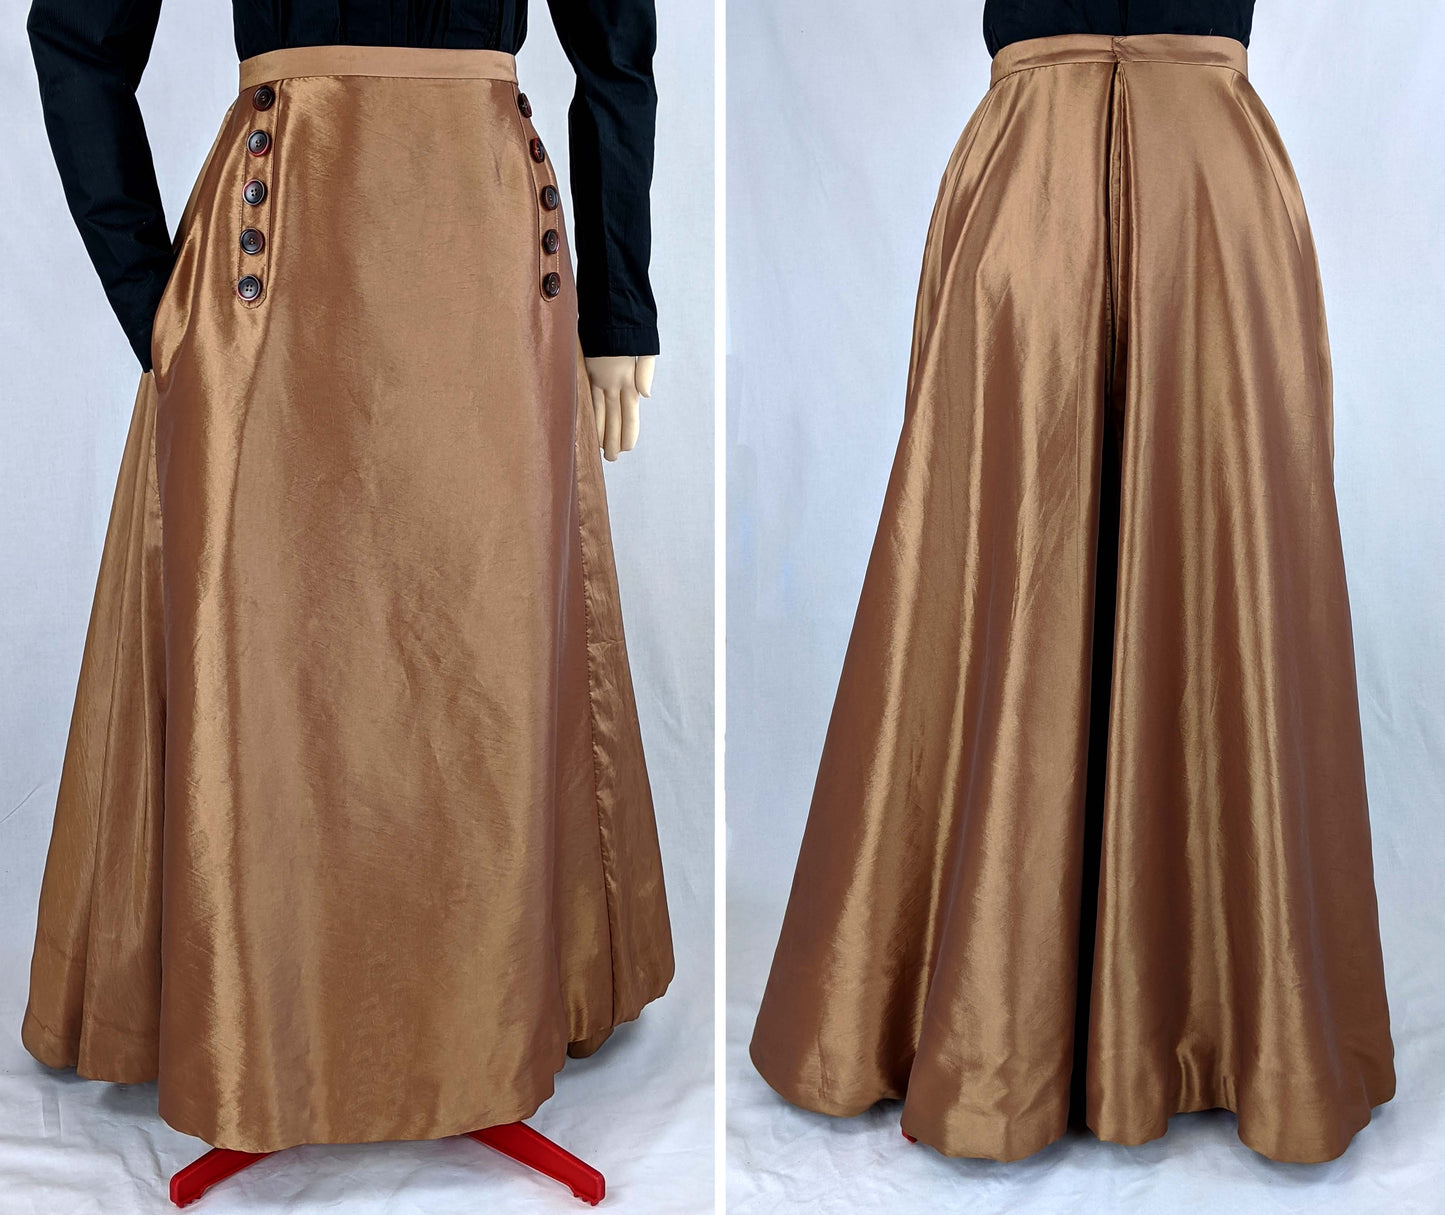 #0414 Edwardian Skirt (Fan-Skirt) worn about 1890 Sewing Pattern Size US 8-30 (EU 34-56) Printed pattern